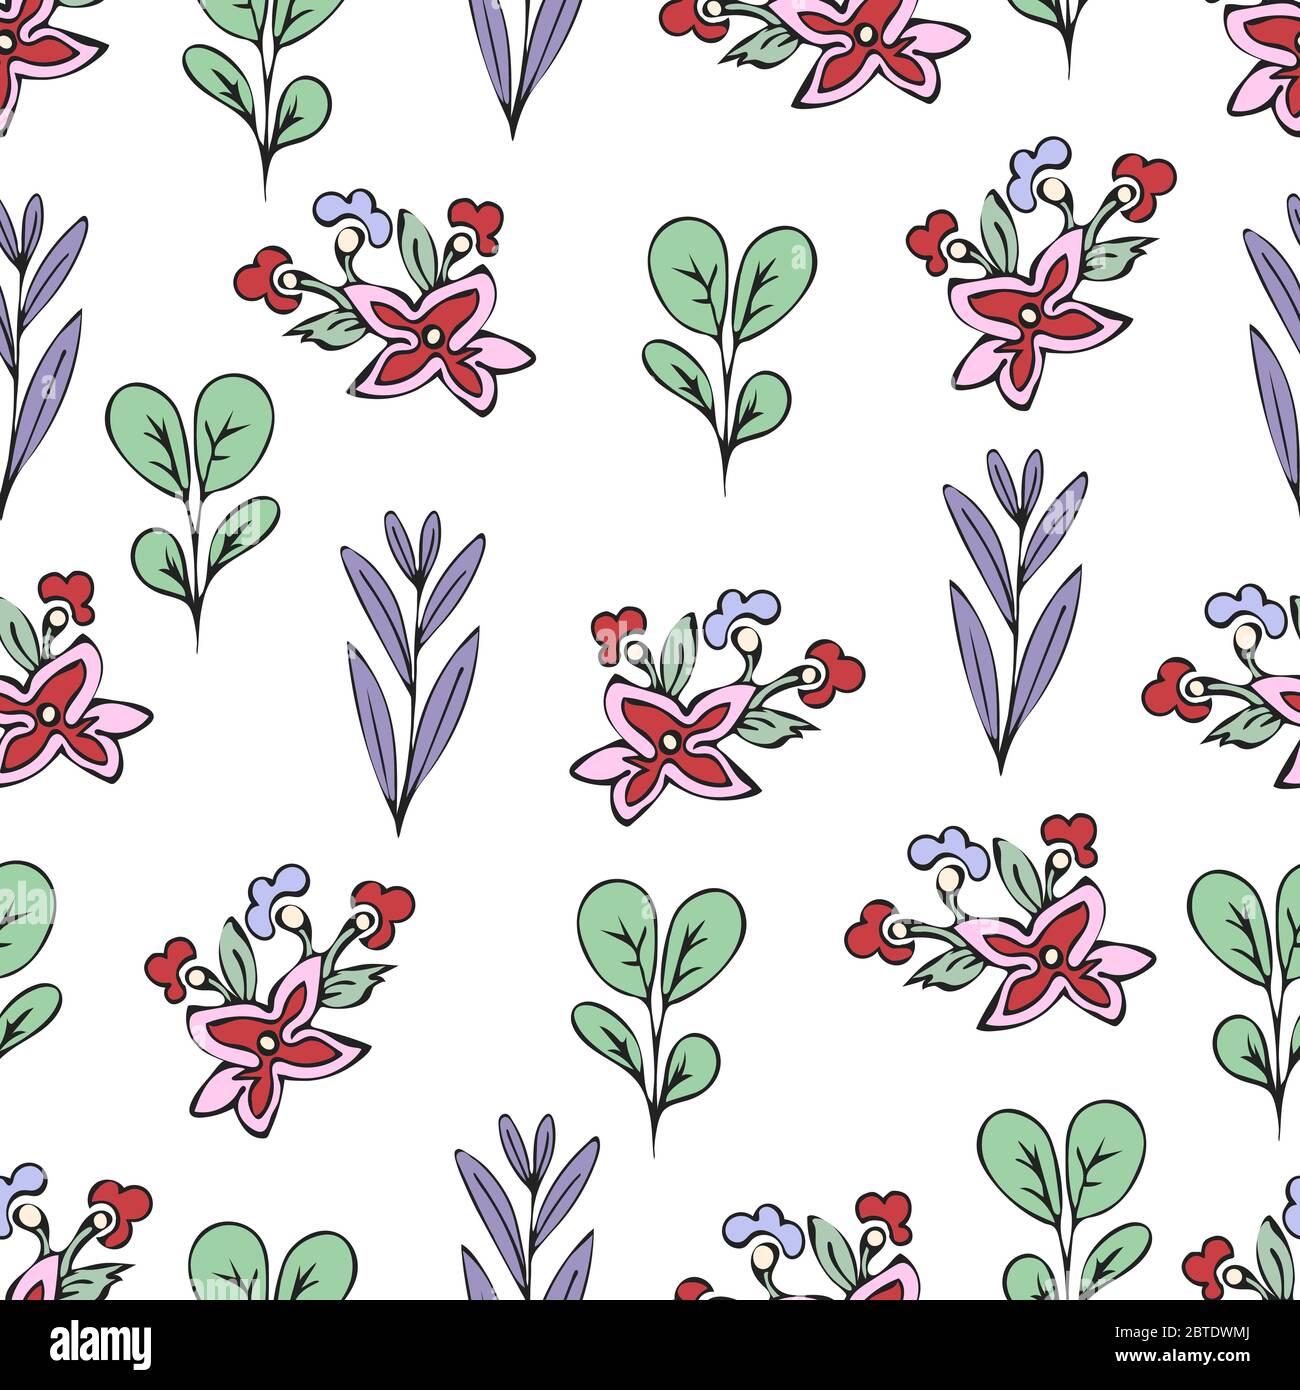 Bunte floral nahtlose Muster, Doodle Cartoon gezeichneten Blumen, exotischen natürlichen Hintergrund, Hand Zeichnung. Mehrfarbige Pflanzenzweige, Knospen, Blütenblätter an Stock Vektor